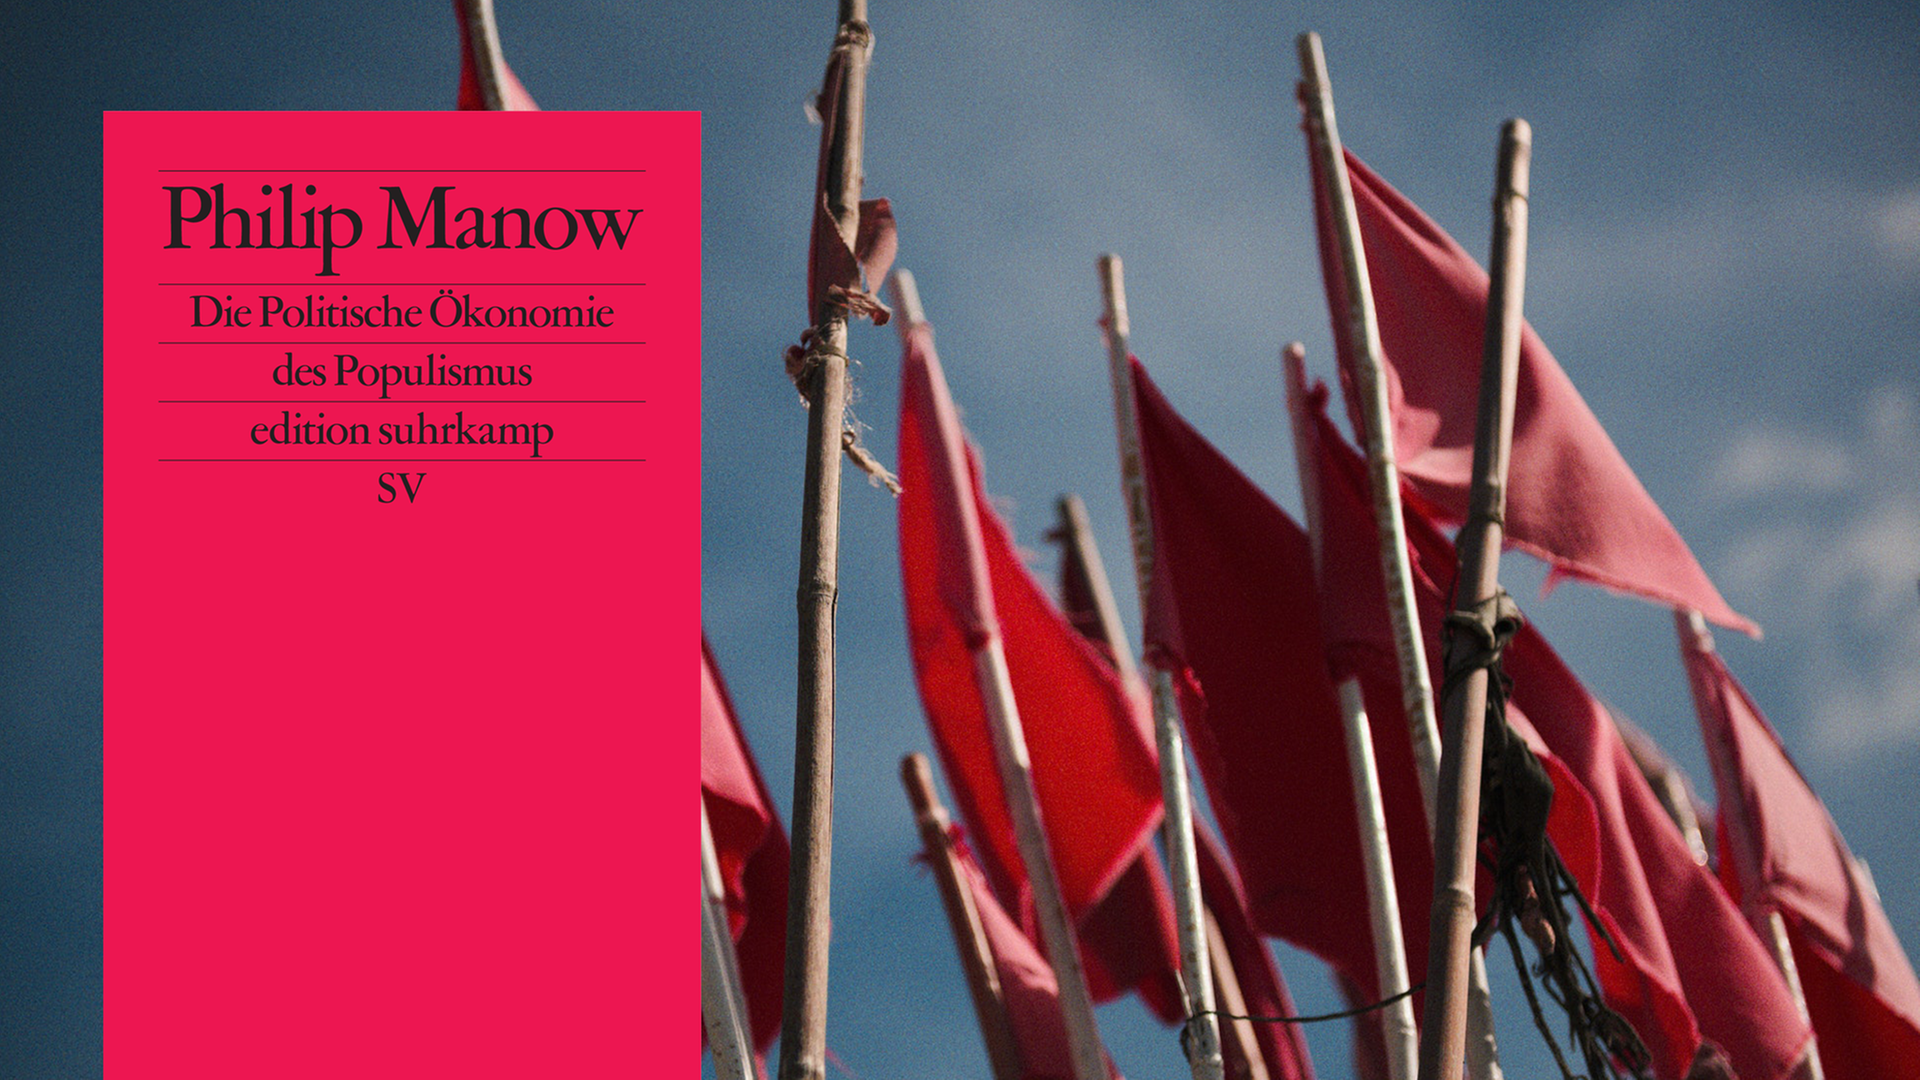 Philip Manow: "Die Politische Ökonomie des Populismus"